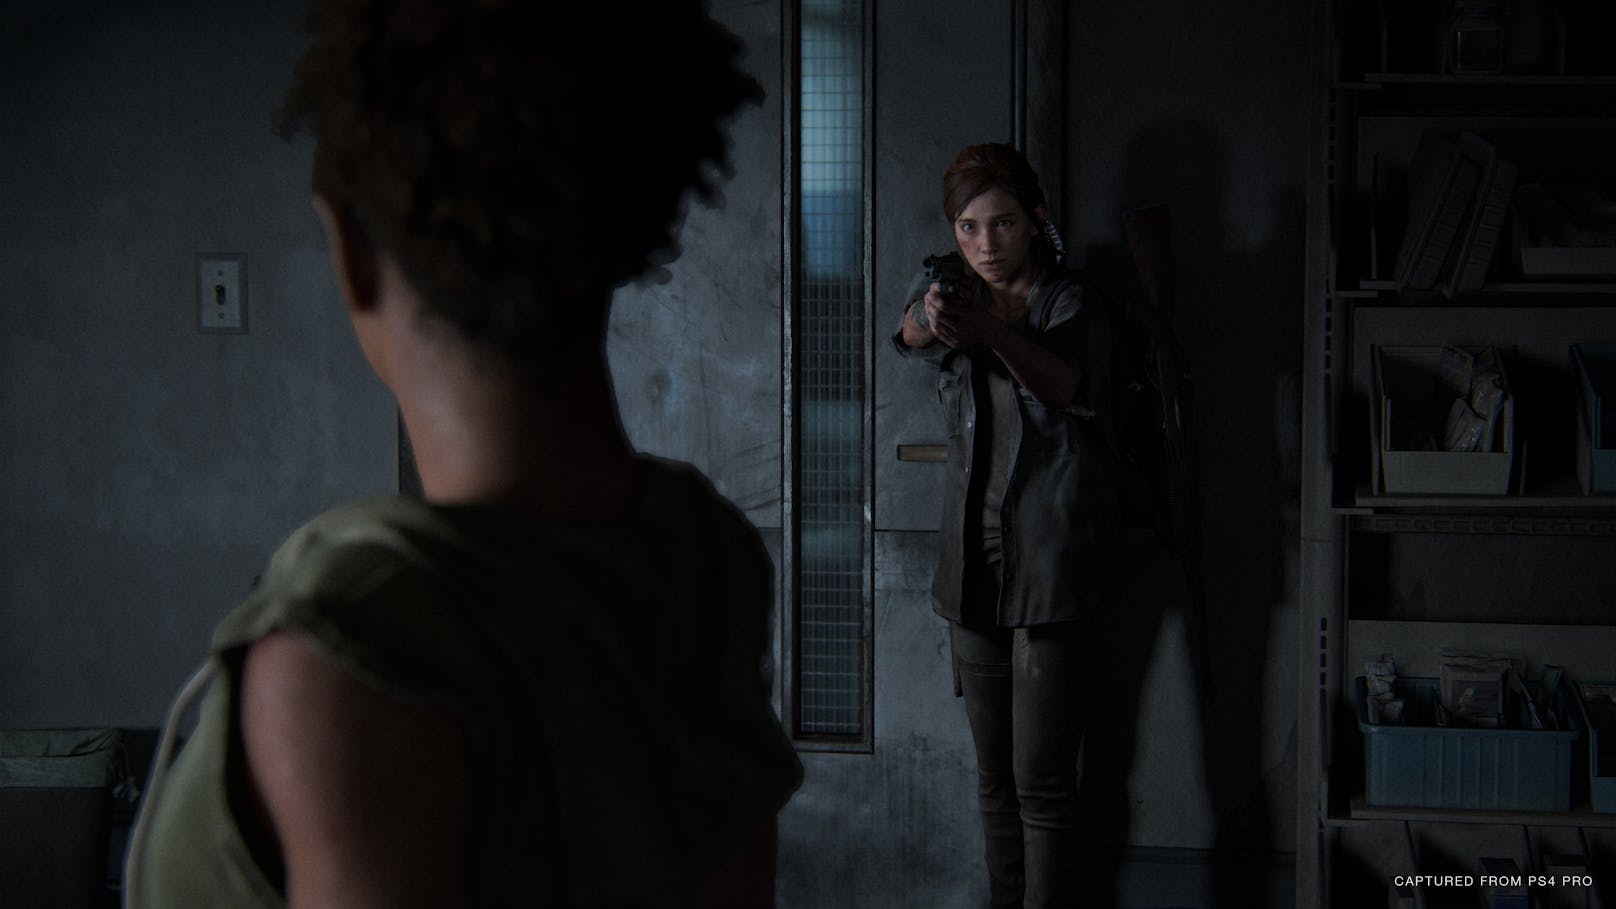 Offene Spielwelt bietet "The Last of Us Part II" zumindest in dieser Sequenz keine, die gewaltigen Areale sind aber so groß, dass der Eindruck durchaus entstehen könnte.